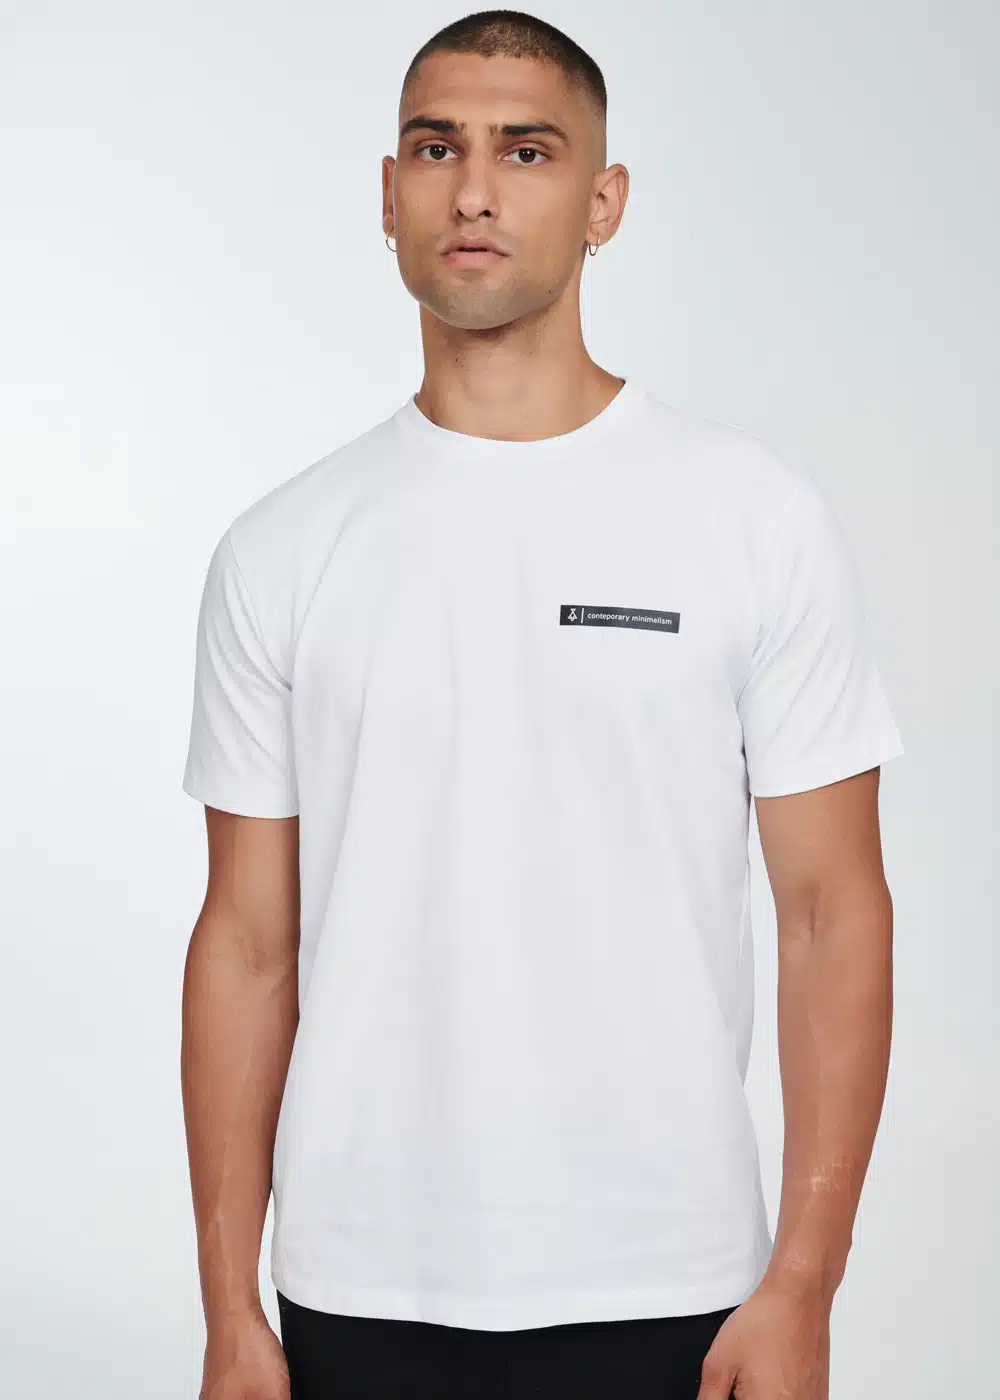 P/COC Ανδρικό T-Shirt με Στρογγυλή Λαιμόκοψη και Τύπωμα στο Αριστερό Μπροστινό Μέρος Λευκό - P-1712 - WHITE